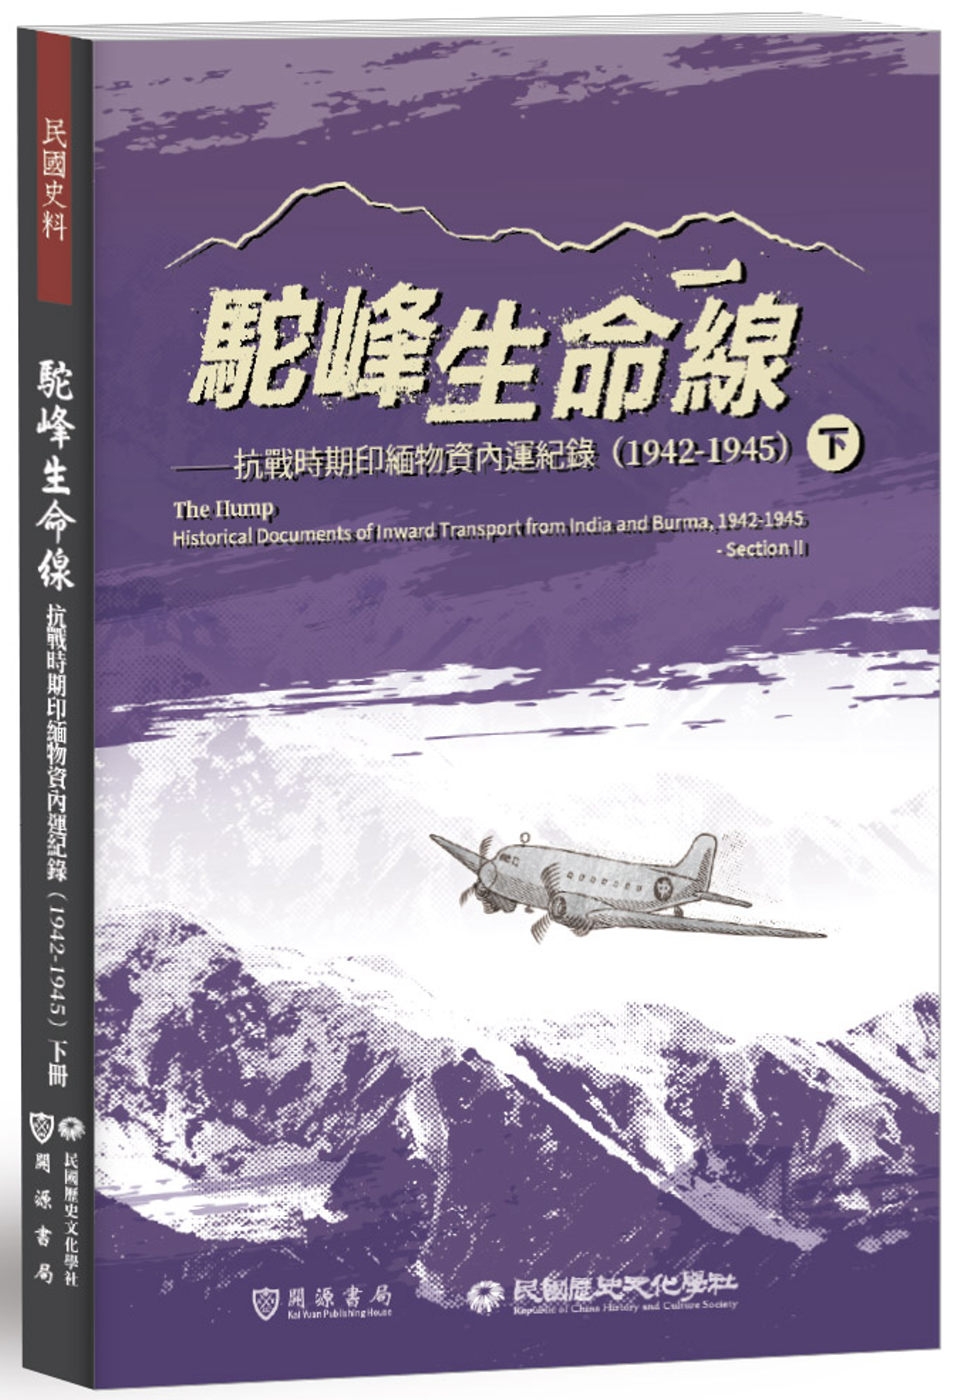 駝峰生命線：抗戰時期印緬物資內運紀錄(1942-1945)下冊